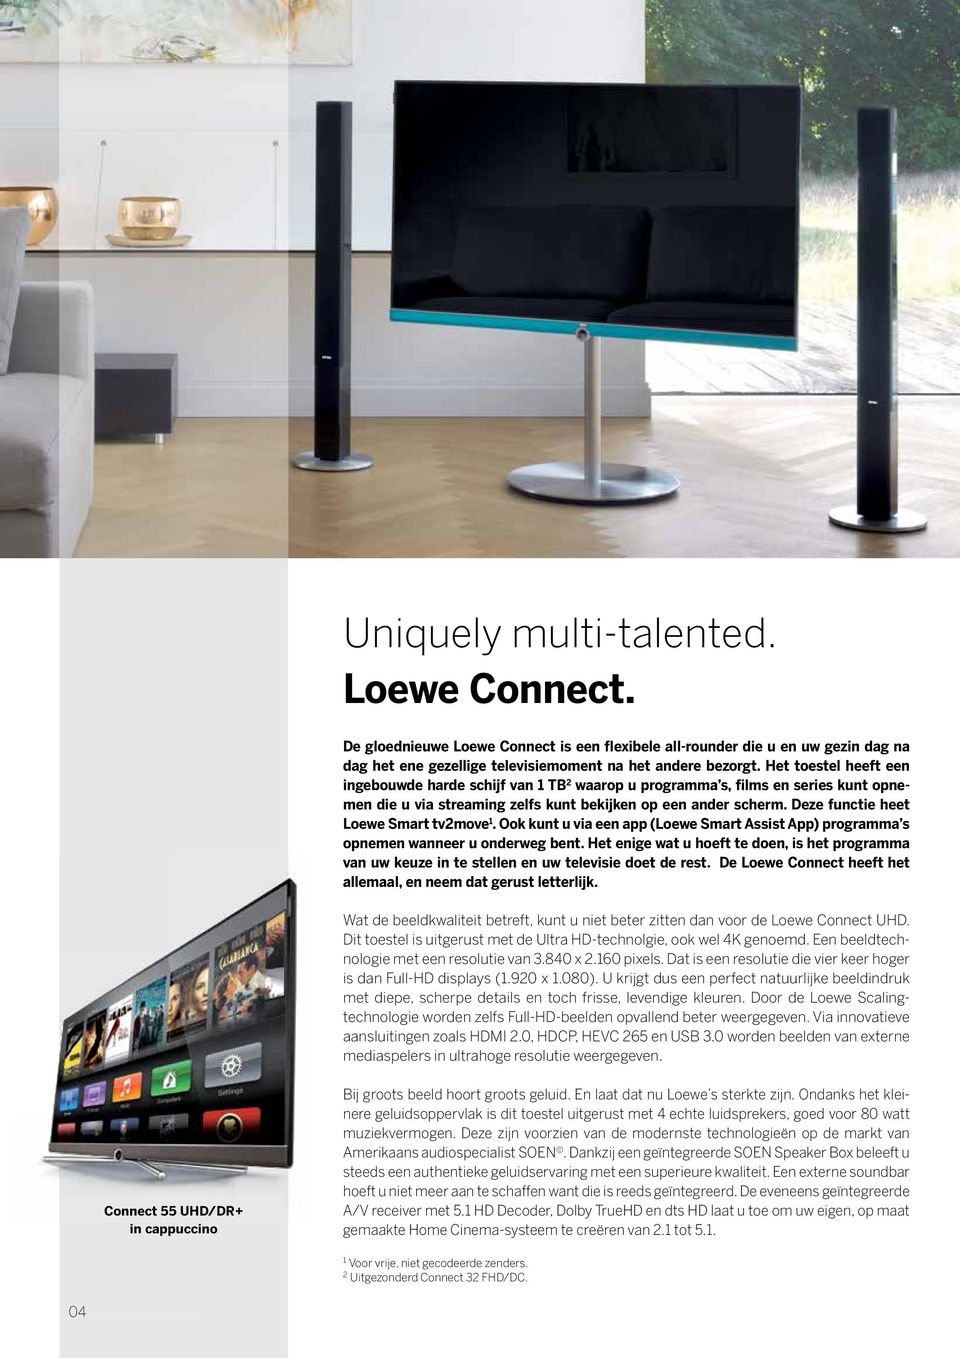 Deze functie heet Loewe Smart tv2move 1. Ook kunt u via een app (Loewe Smart Assist App) programma s opnemen wanneer u onderweg bent.